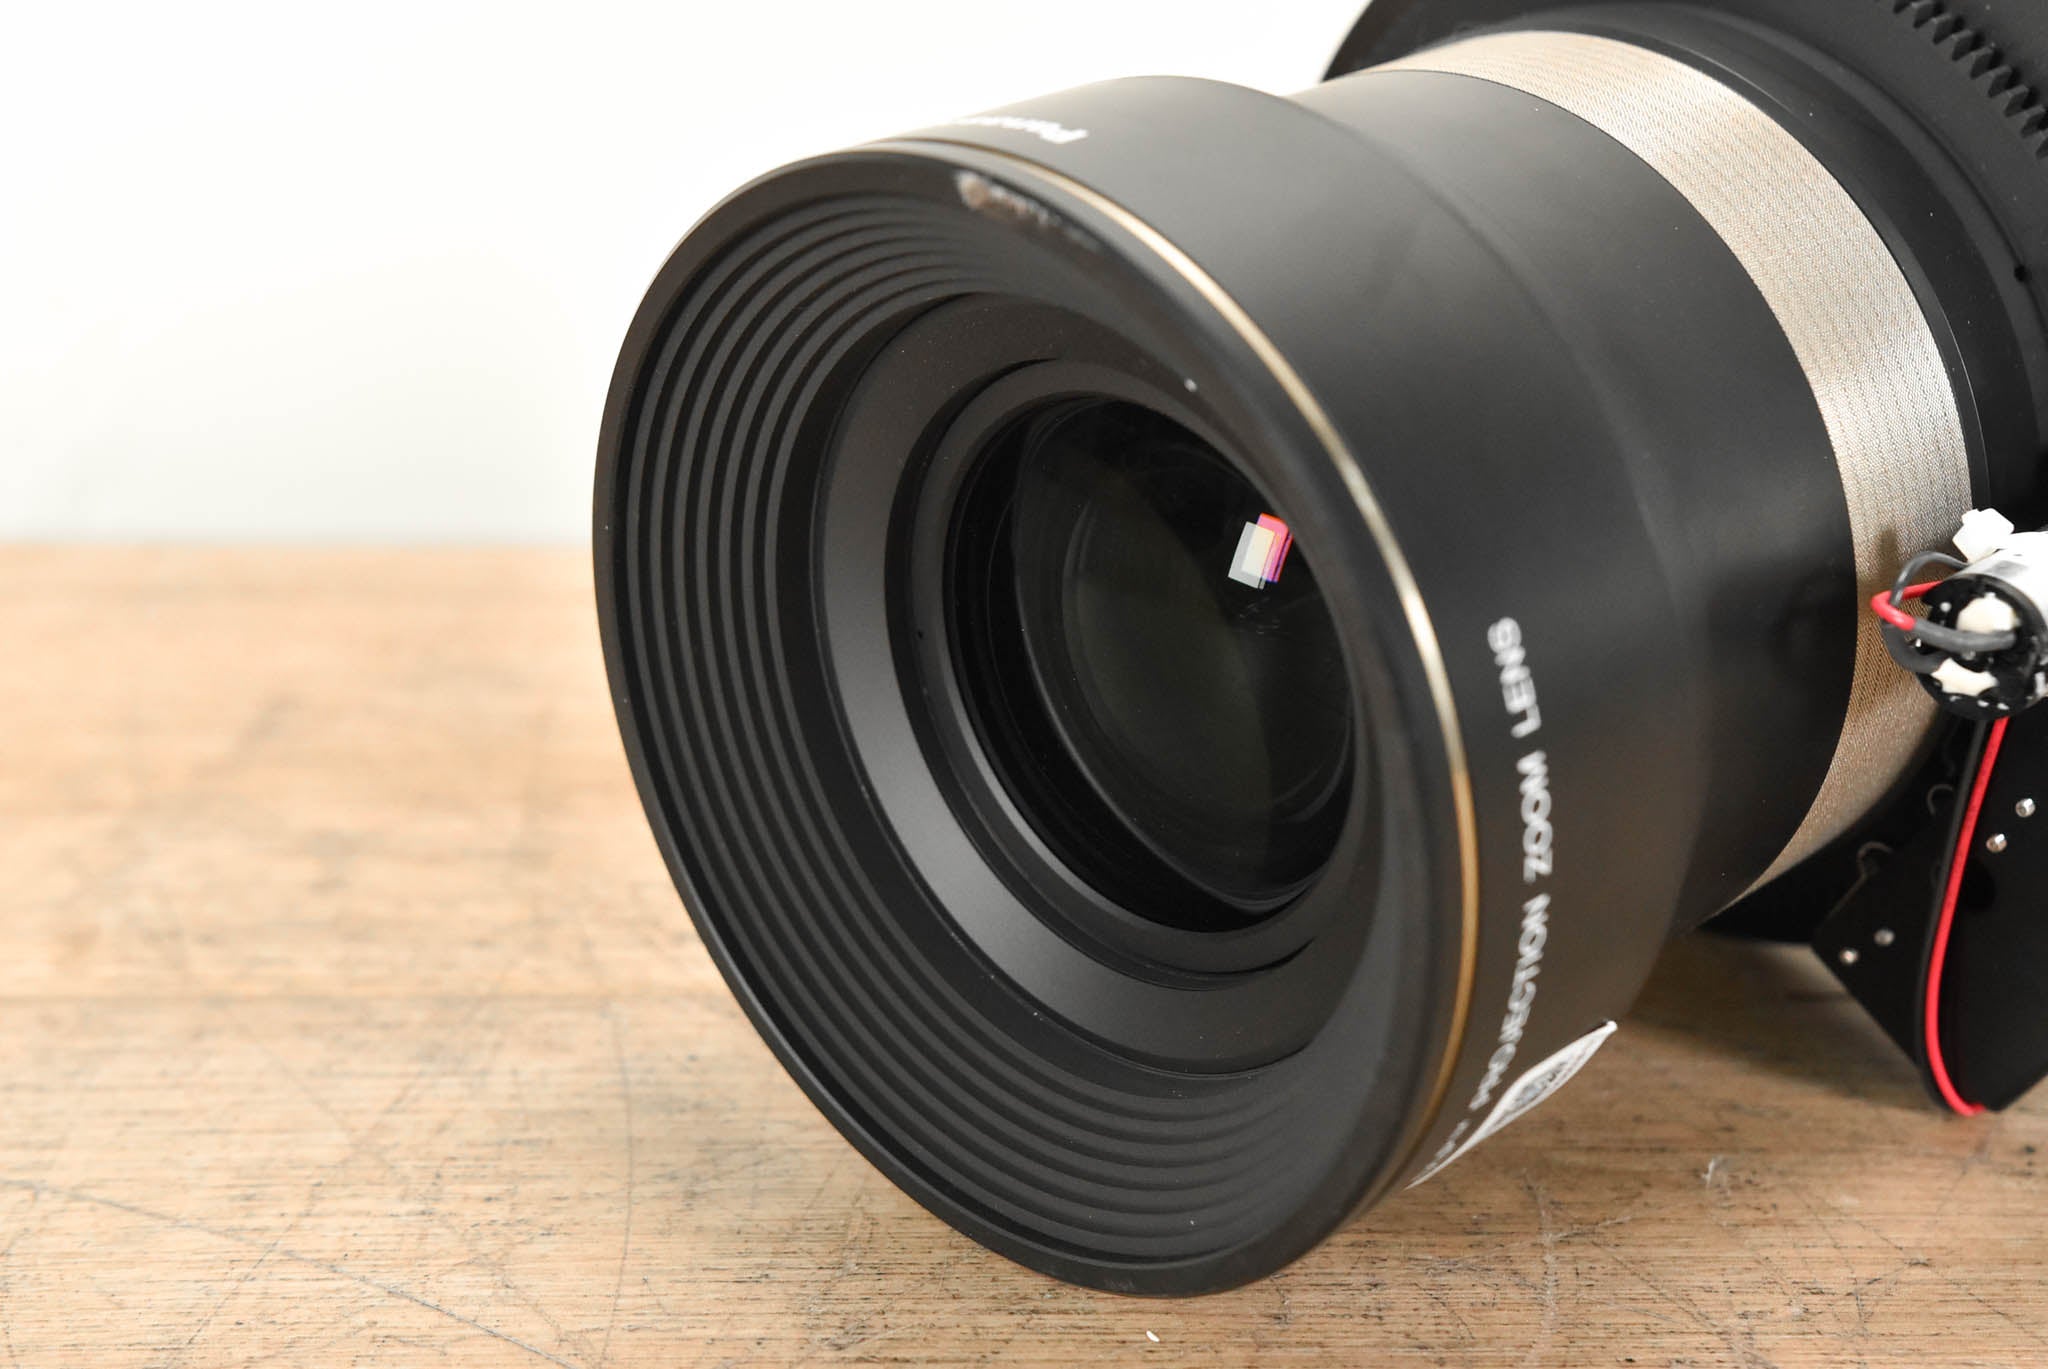 Panasonic ET-D75LE3 Zoom Lens for 3-Chip DLP Projector